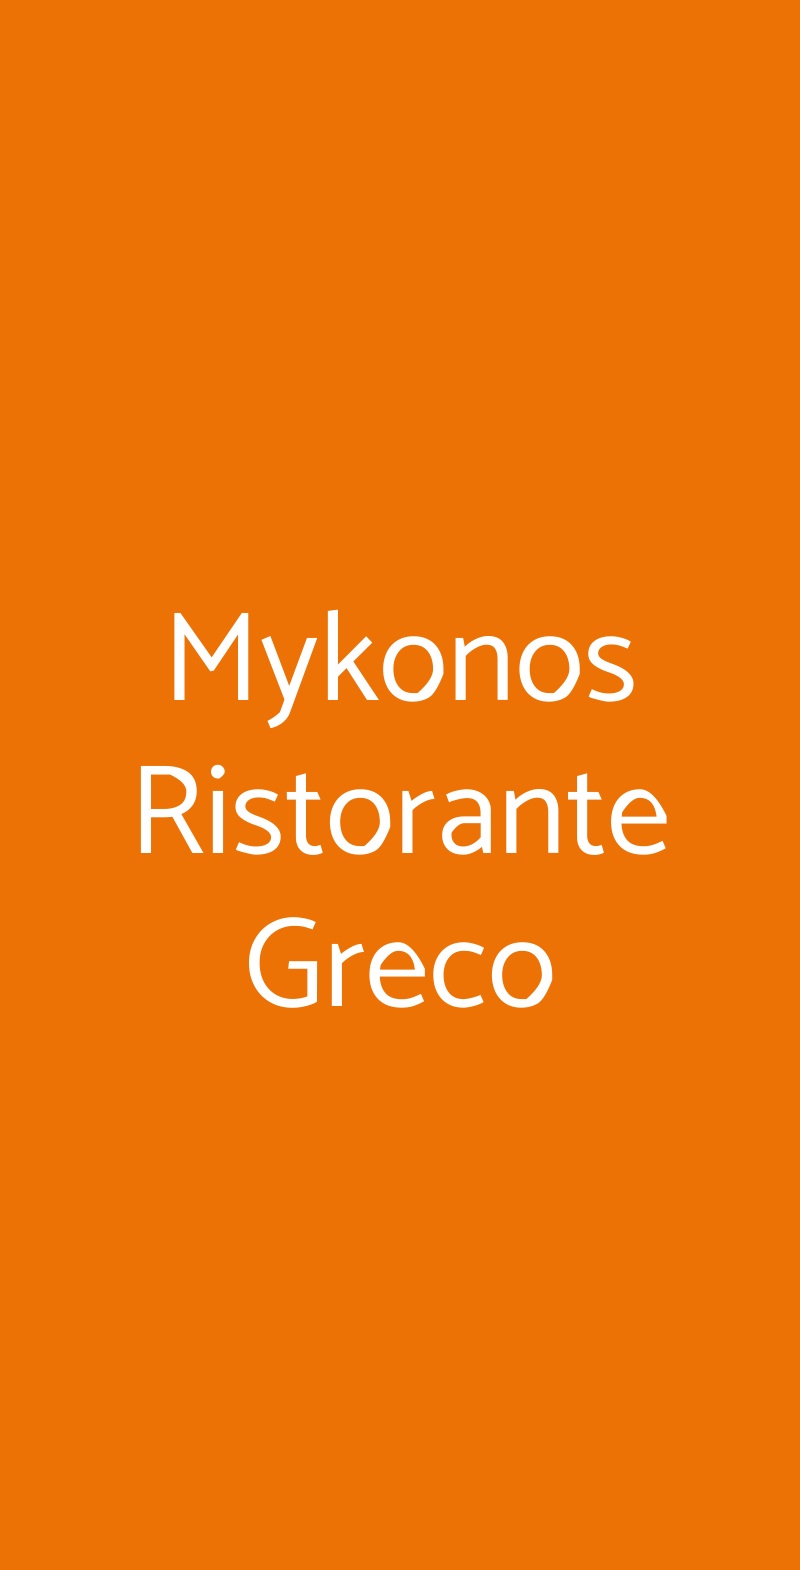 Mykonos Ristorante Greco Milano menù 1 pagina